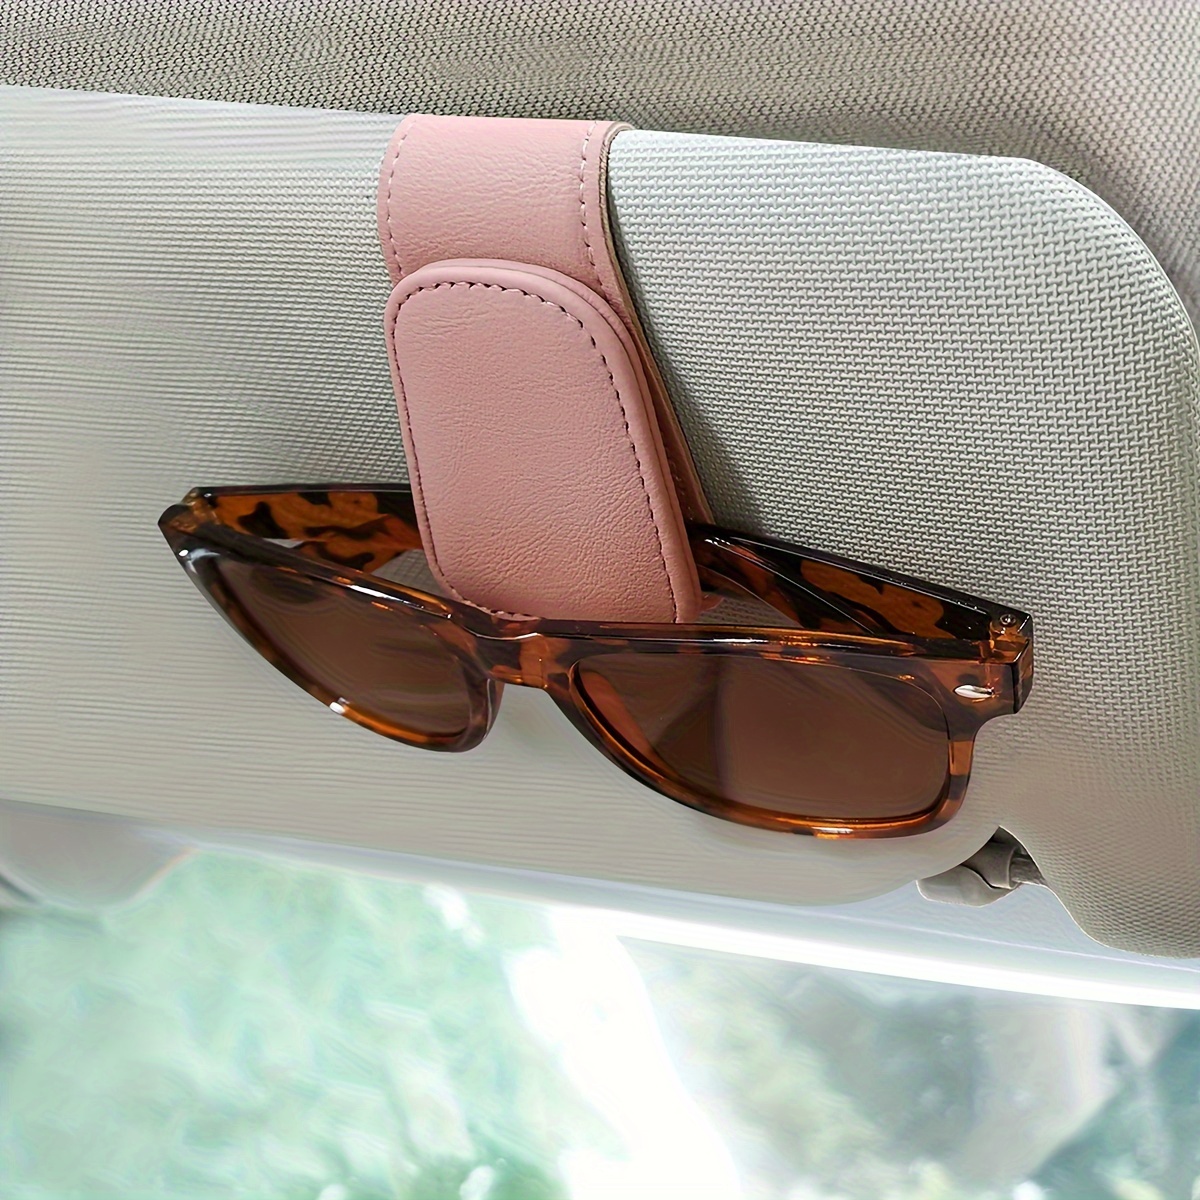 Universal Auto Brillenhalter Auto Sonnenblende Sonnenbrillenhalter Clip  Leder Brillenbügel und Brillengestell für Auto